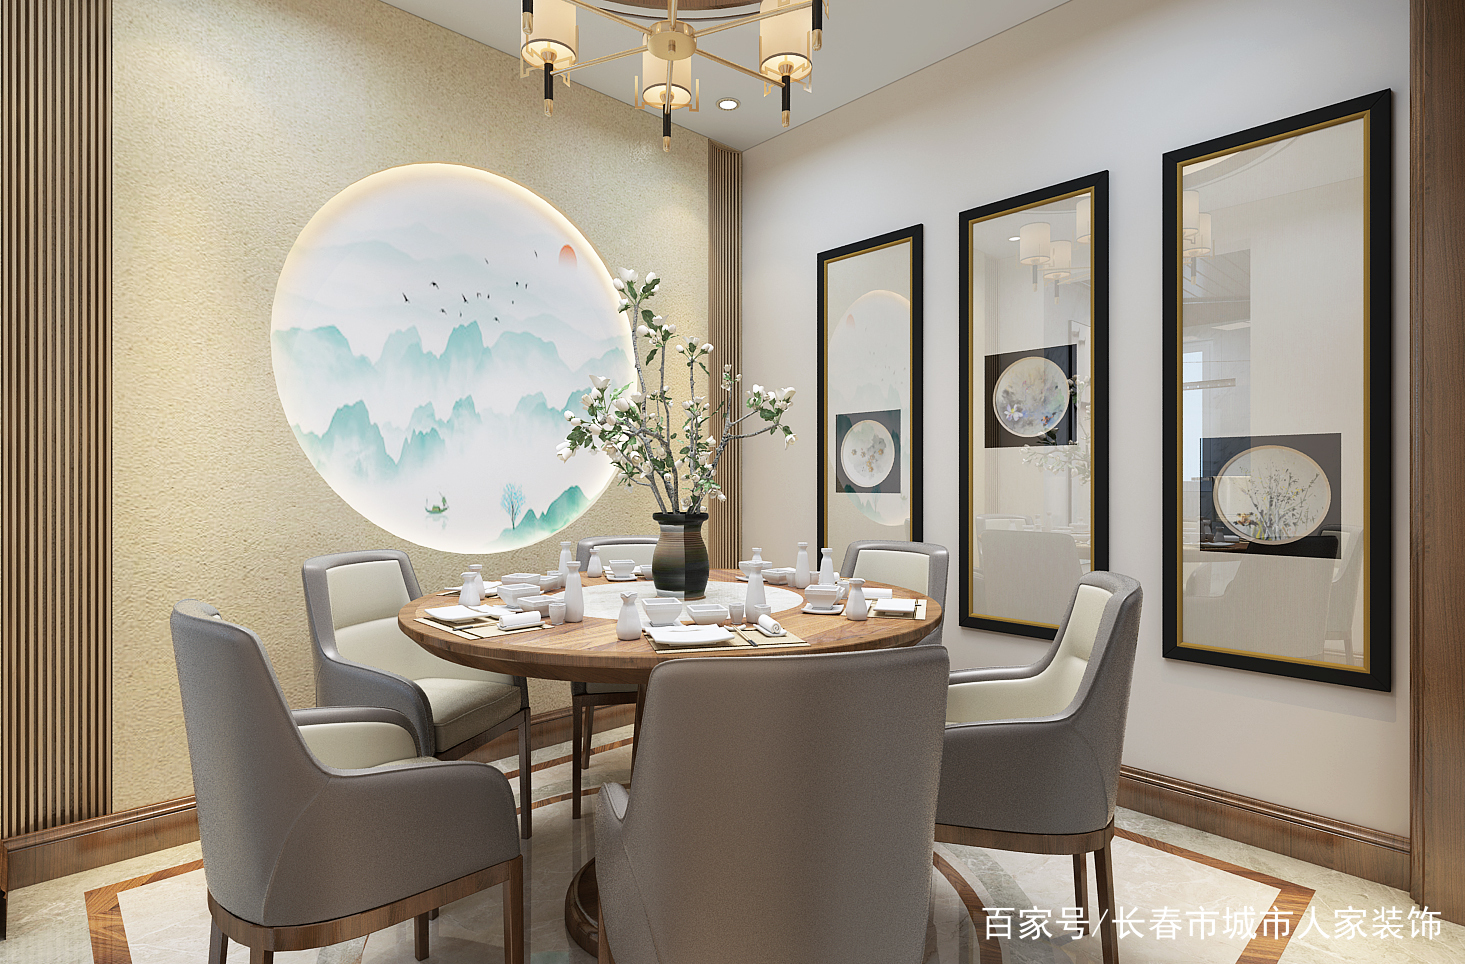 新中式餐厅装修效果图新中式玄关过廊装修案例新中式风格有一种宁静